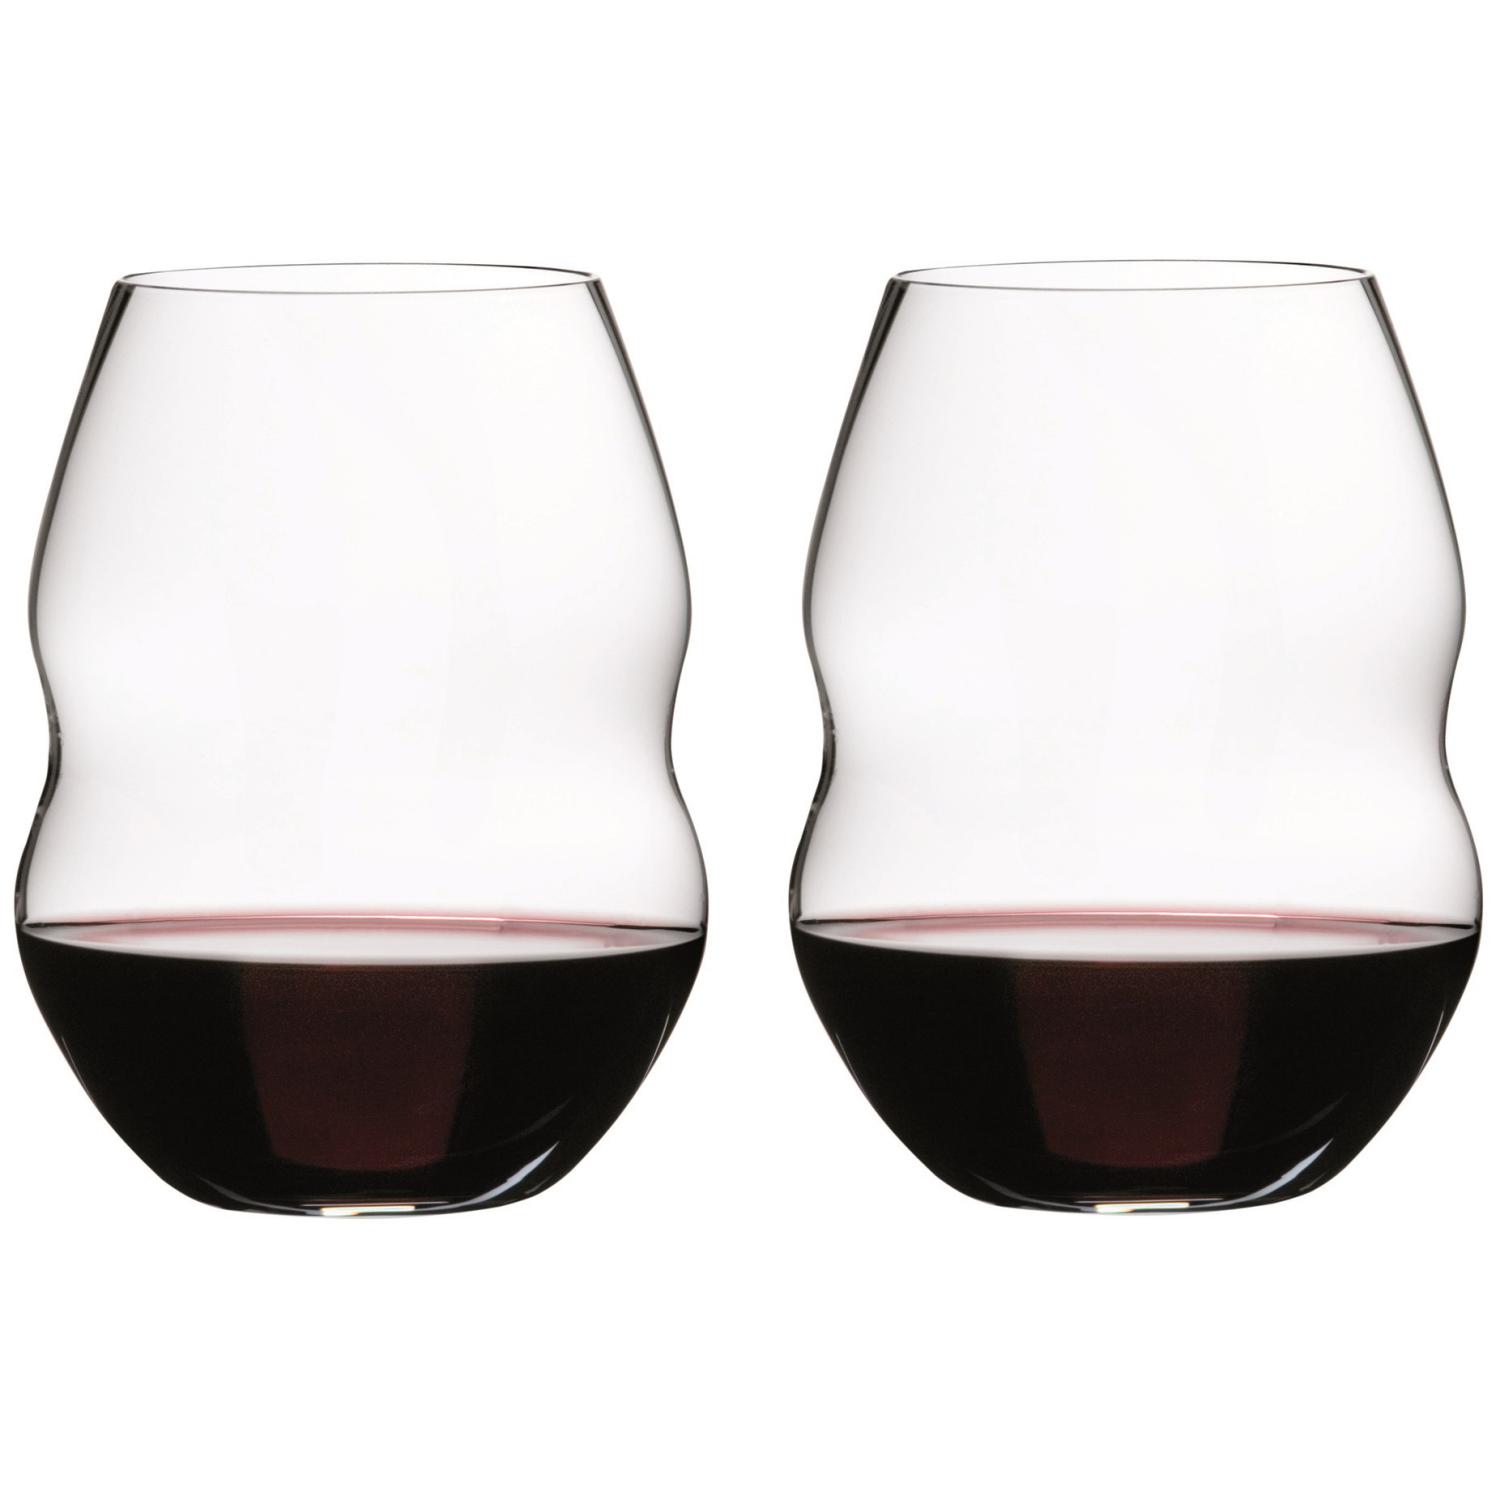 2 бокала для красного вина RIEDEL Swirl Red Wine 580 мл (арт. 0450/30)